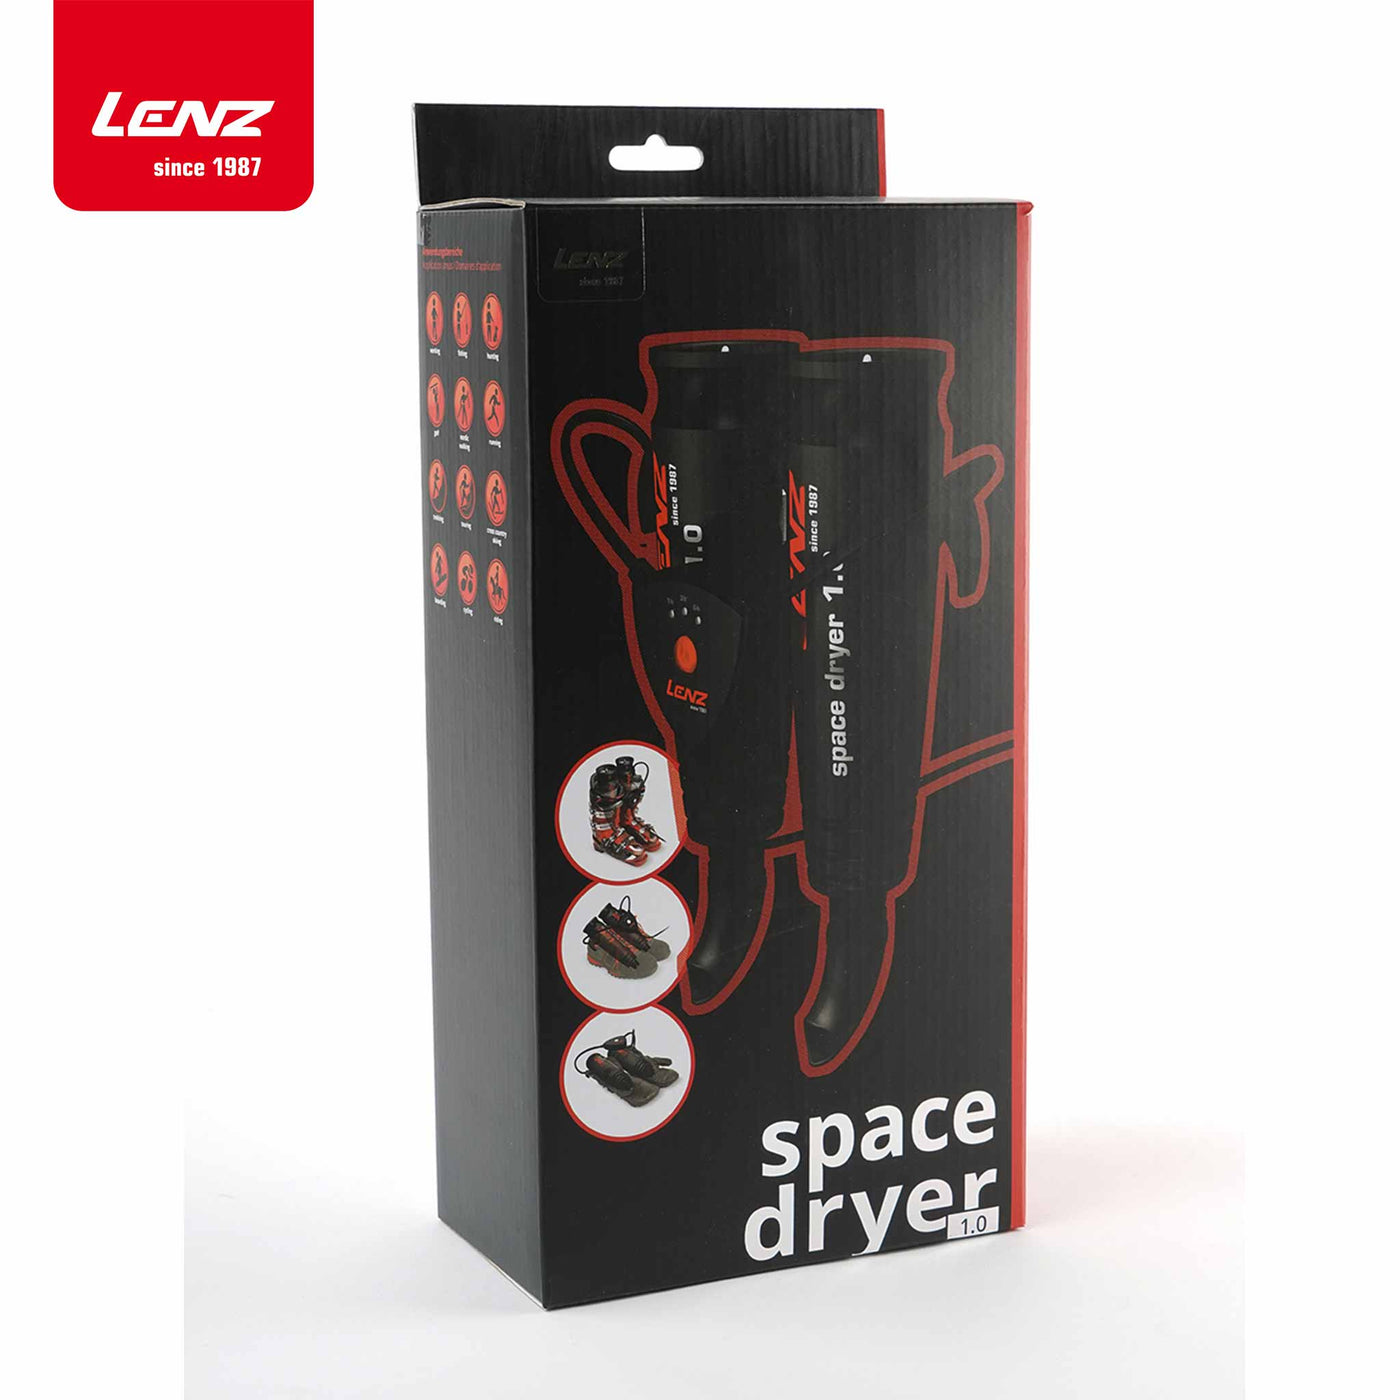 Lenz Schuhtrockner Space Dryer 1.0